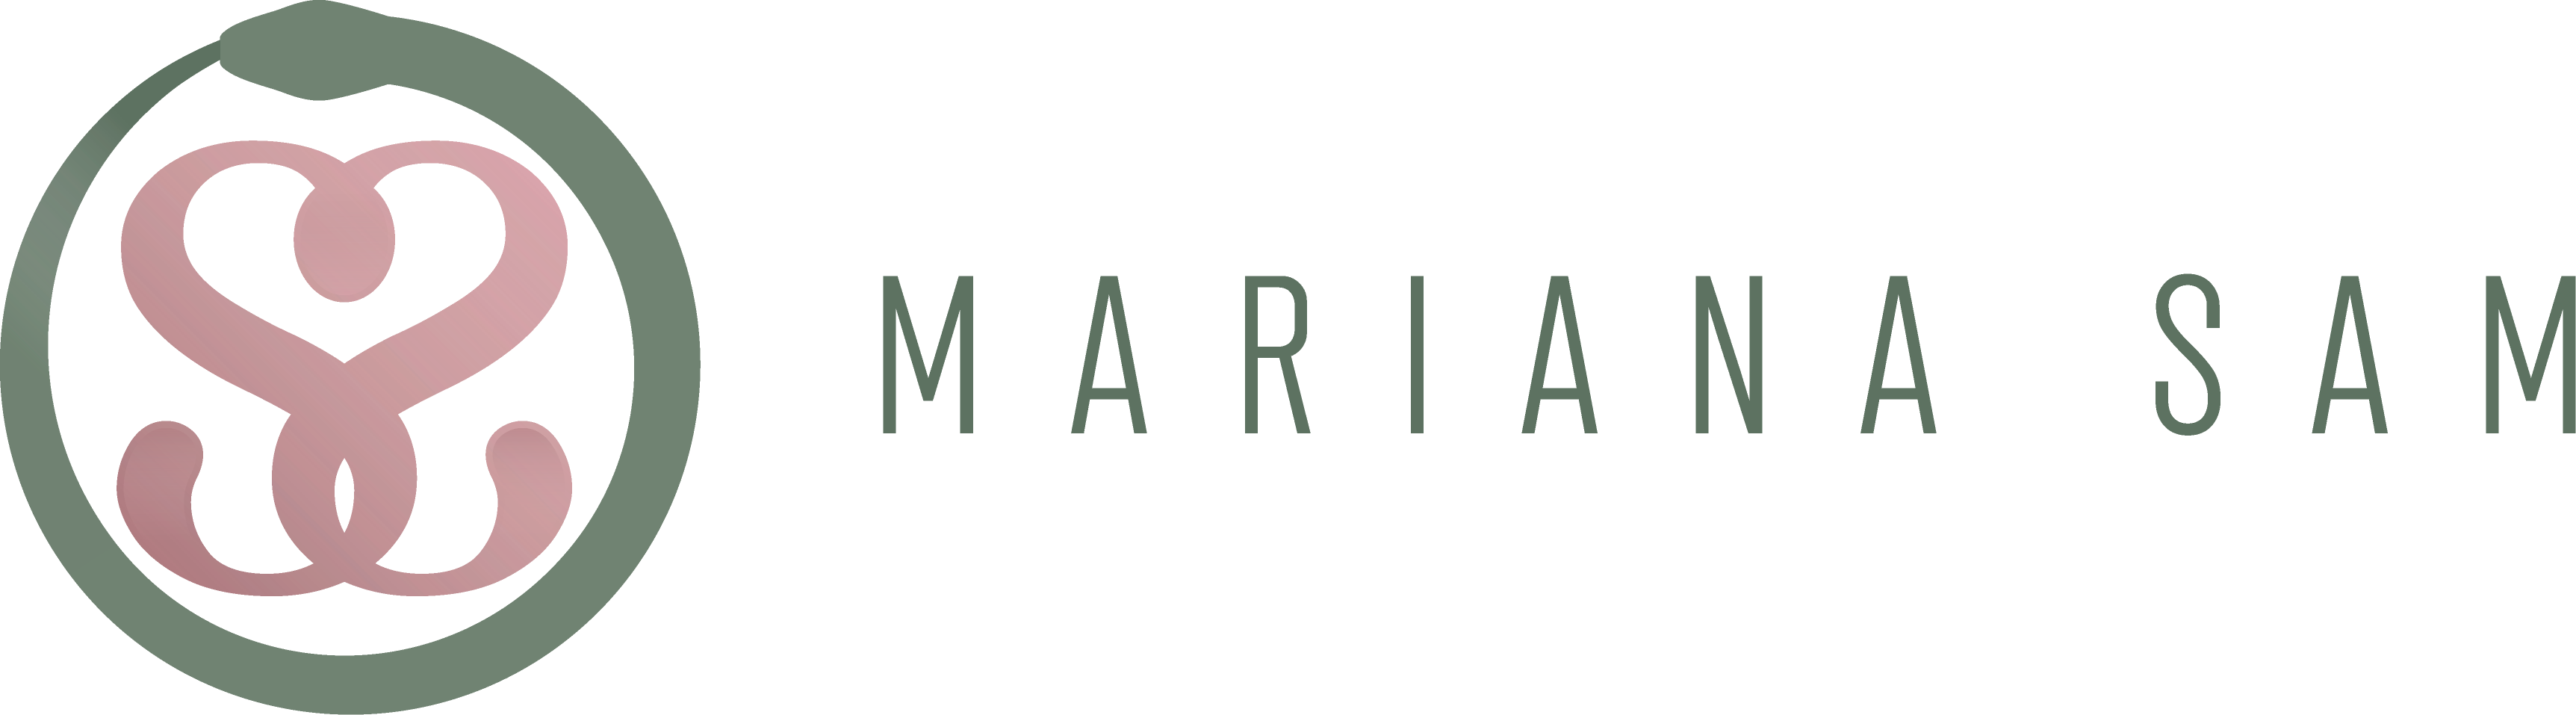 Mariana Sam